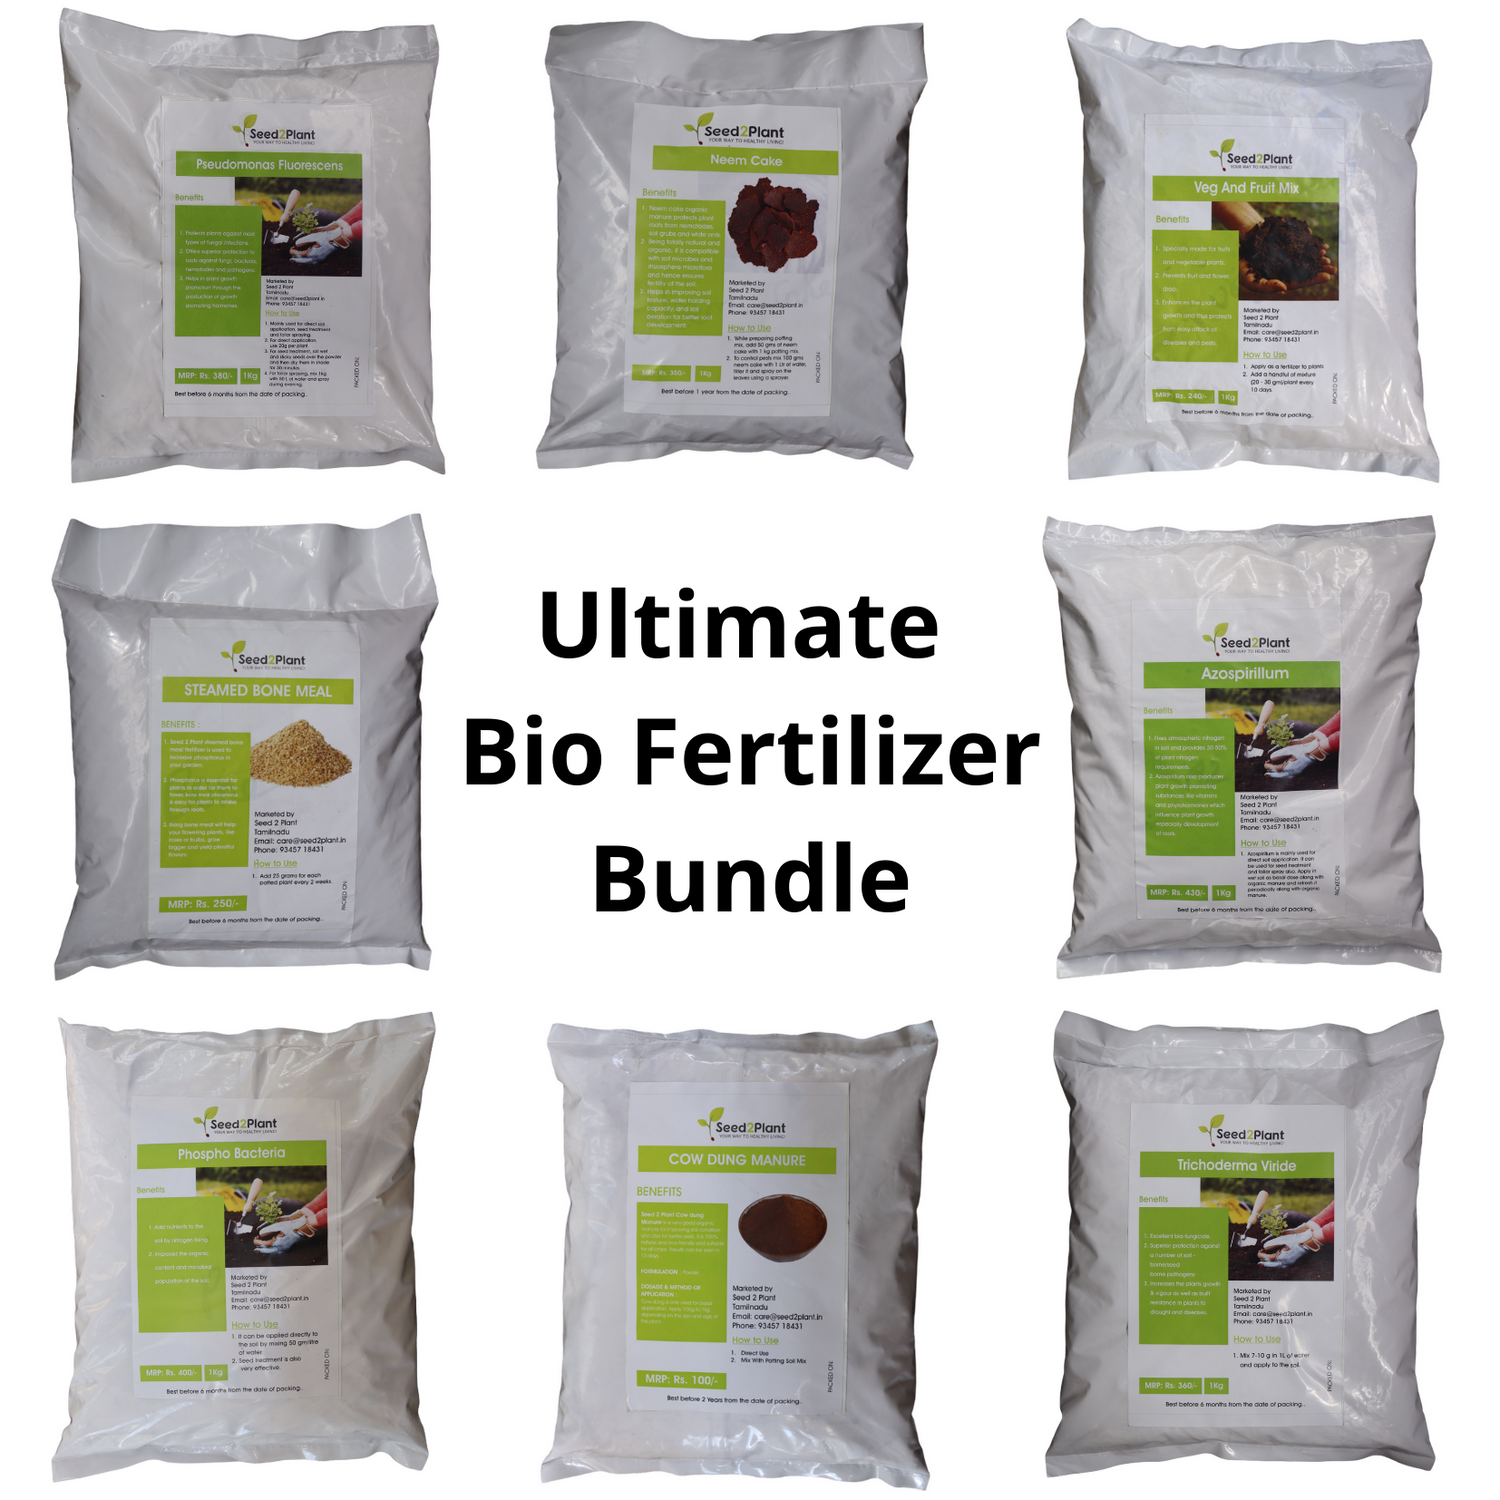 Ultimate Bio Fertilizer Bundle